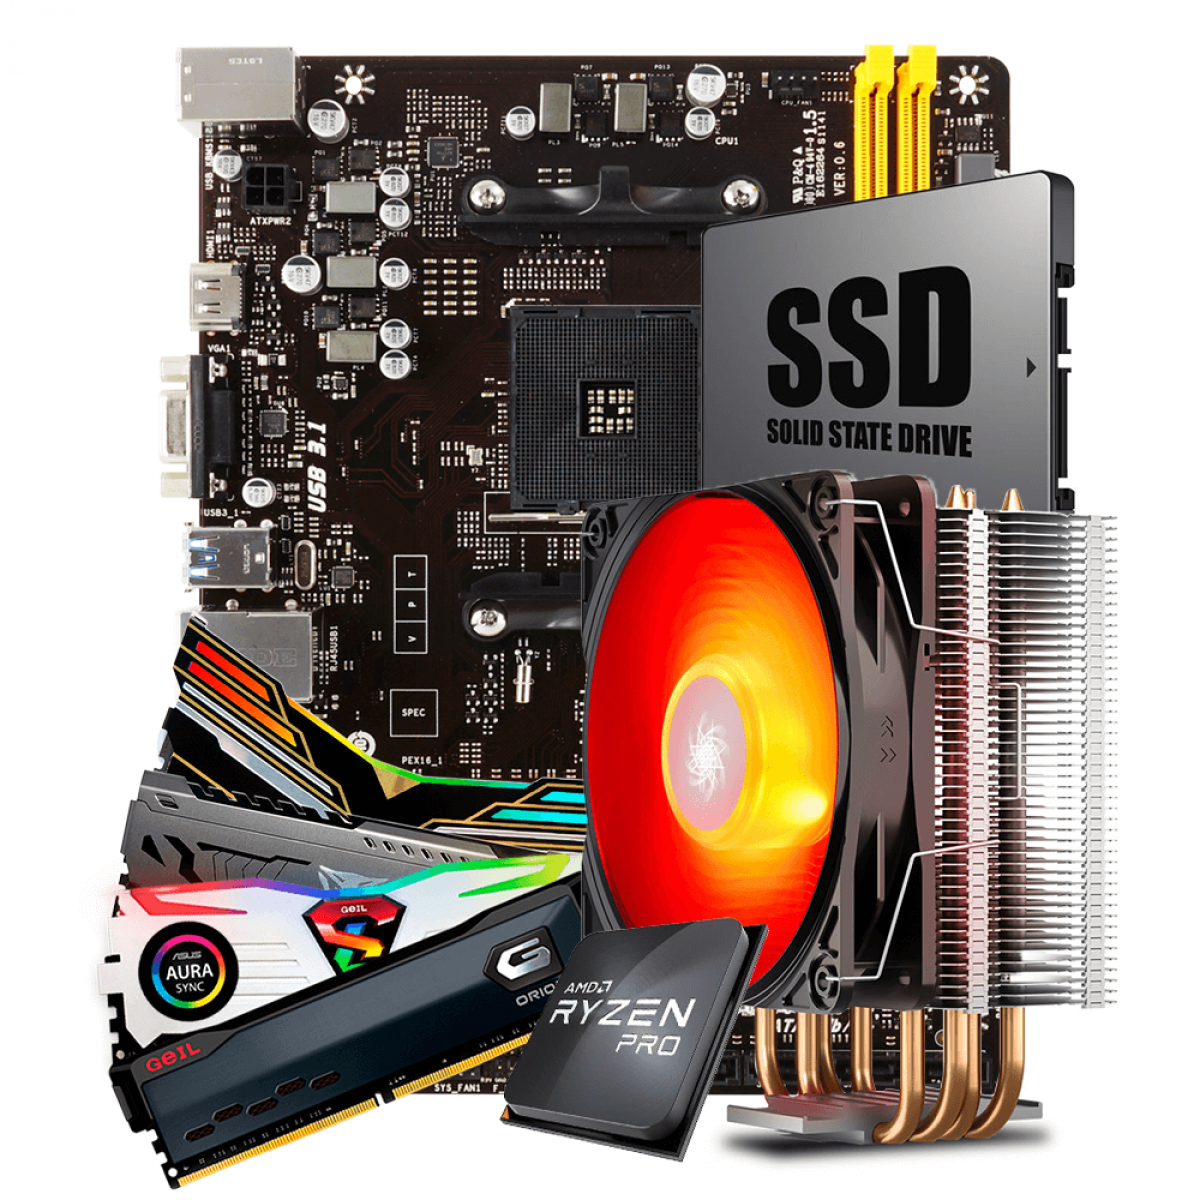 Kit Upgrade Biostar A320MH DDR4 AMD AM4 + AMD Ryzen 3 PRO 3200GE 3.3GHz + Cooler + Memória DDR4 8GB 3000MHz + SSD 240GB